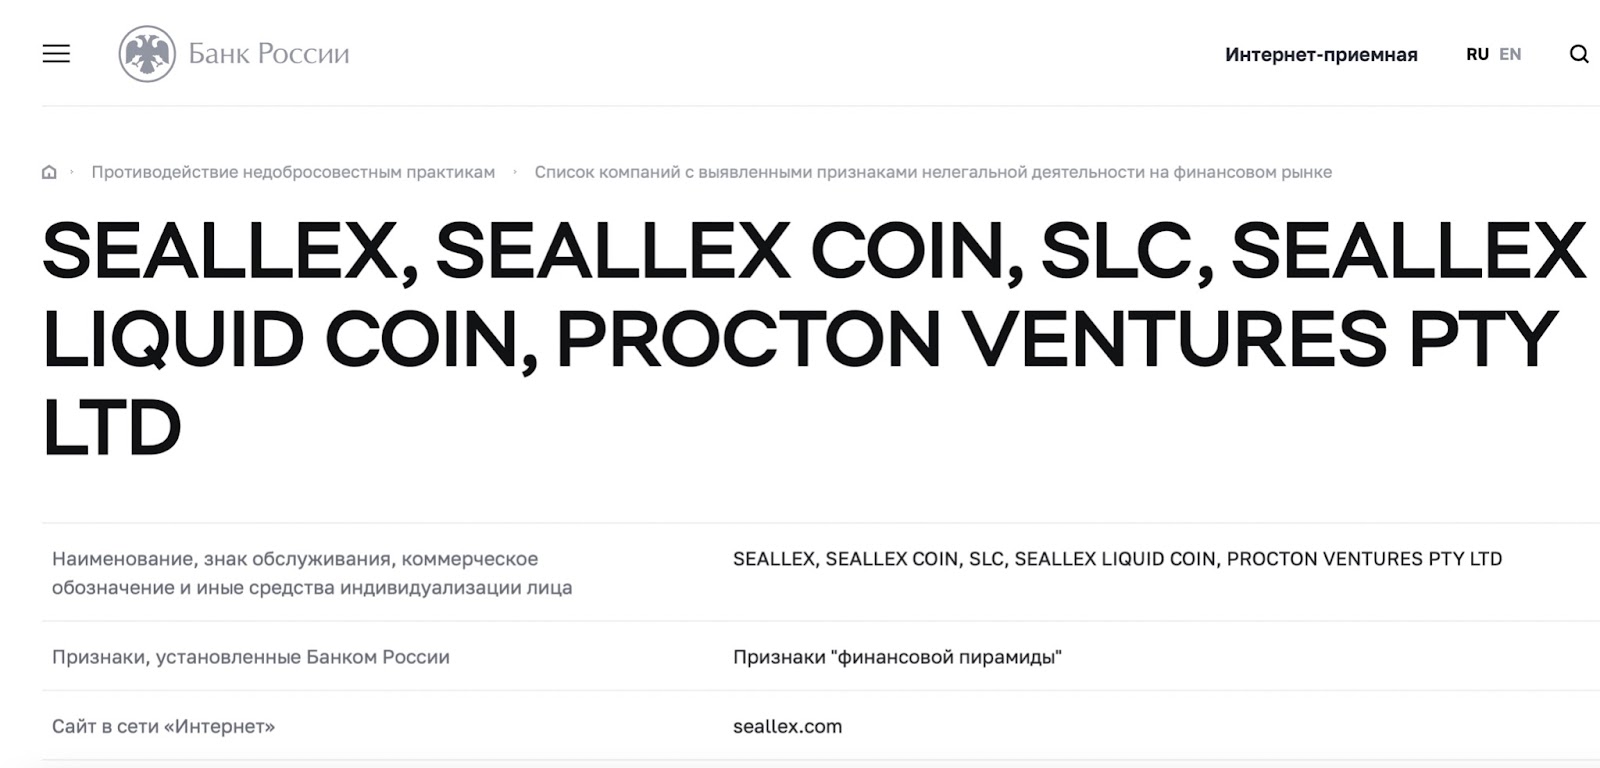 Seallex: отзывы об инвестировании. Вкладывать или не стоит?